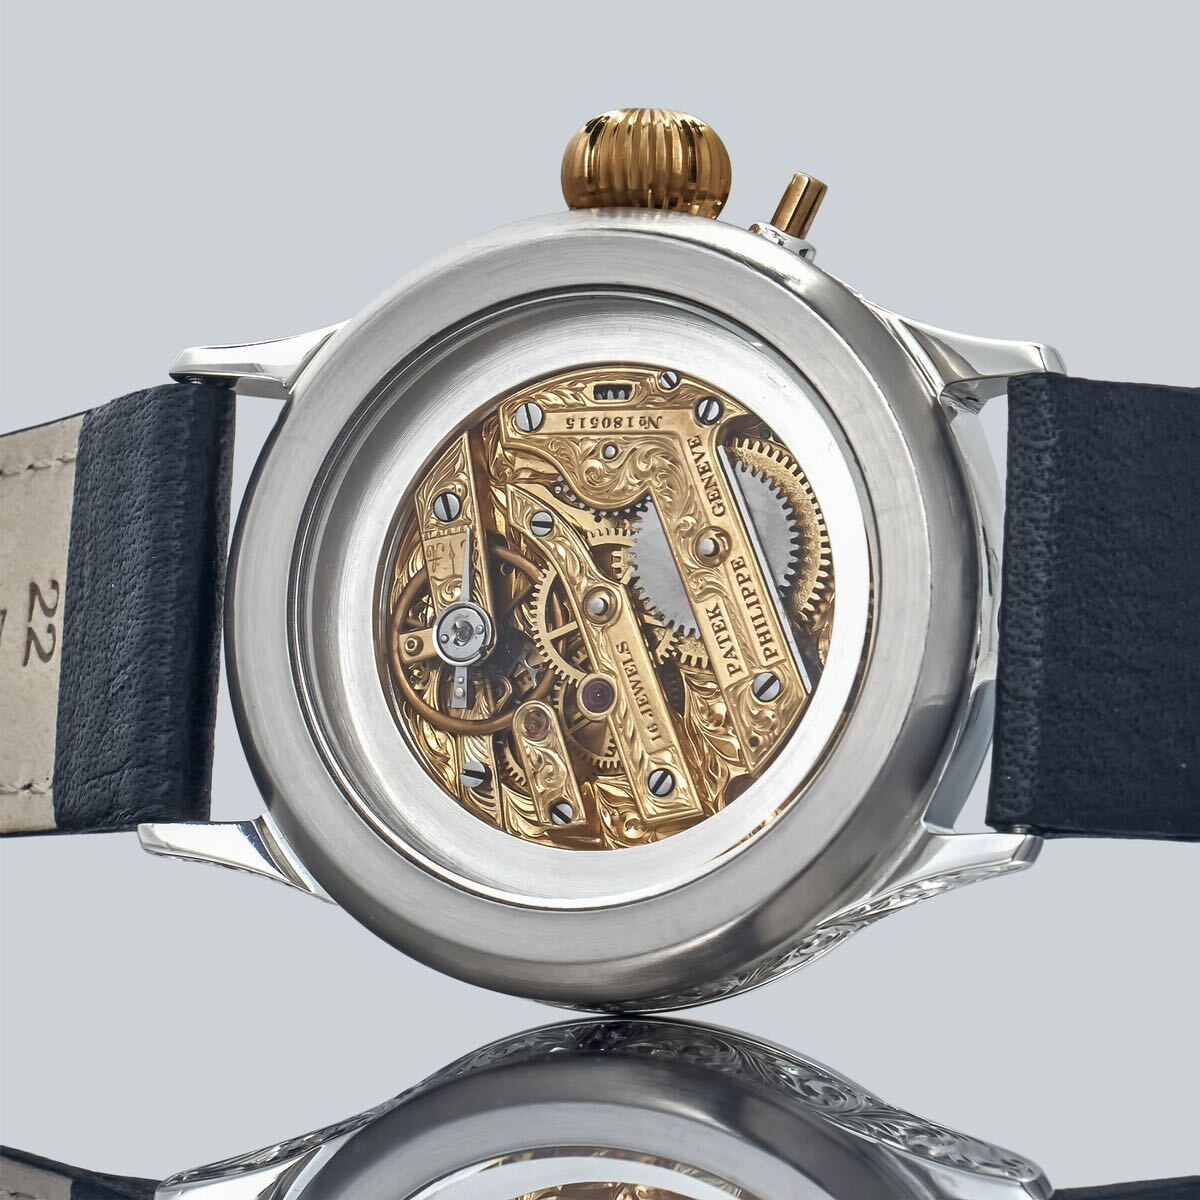 Marriage Watch Patek Philippe 40mm Men's Watch With Pocket Watch Design Hand-wound Skeleton